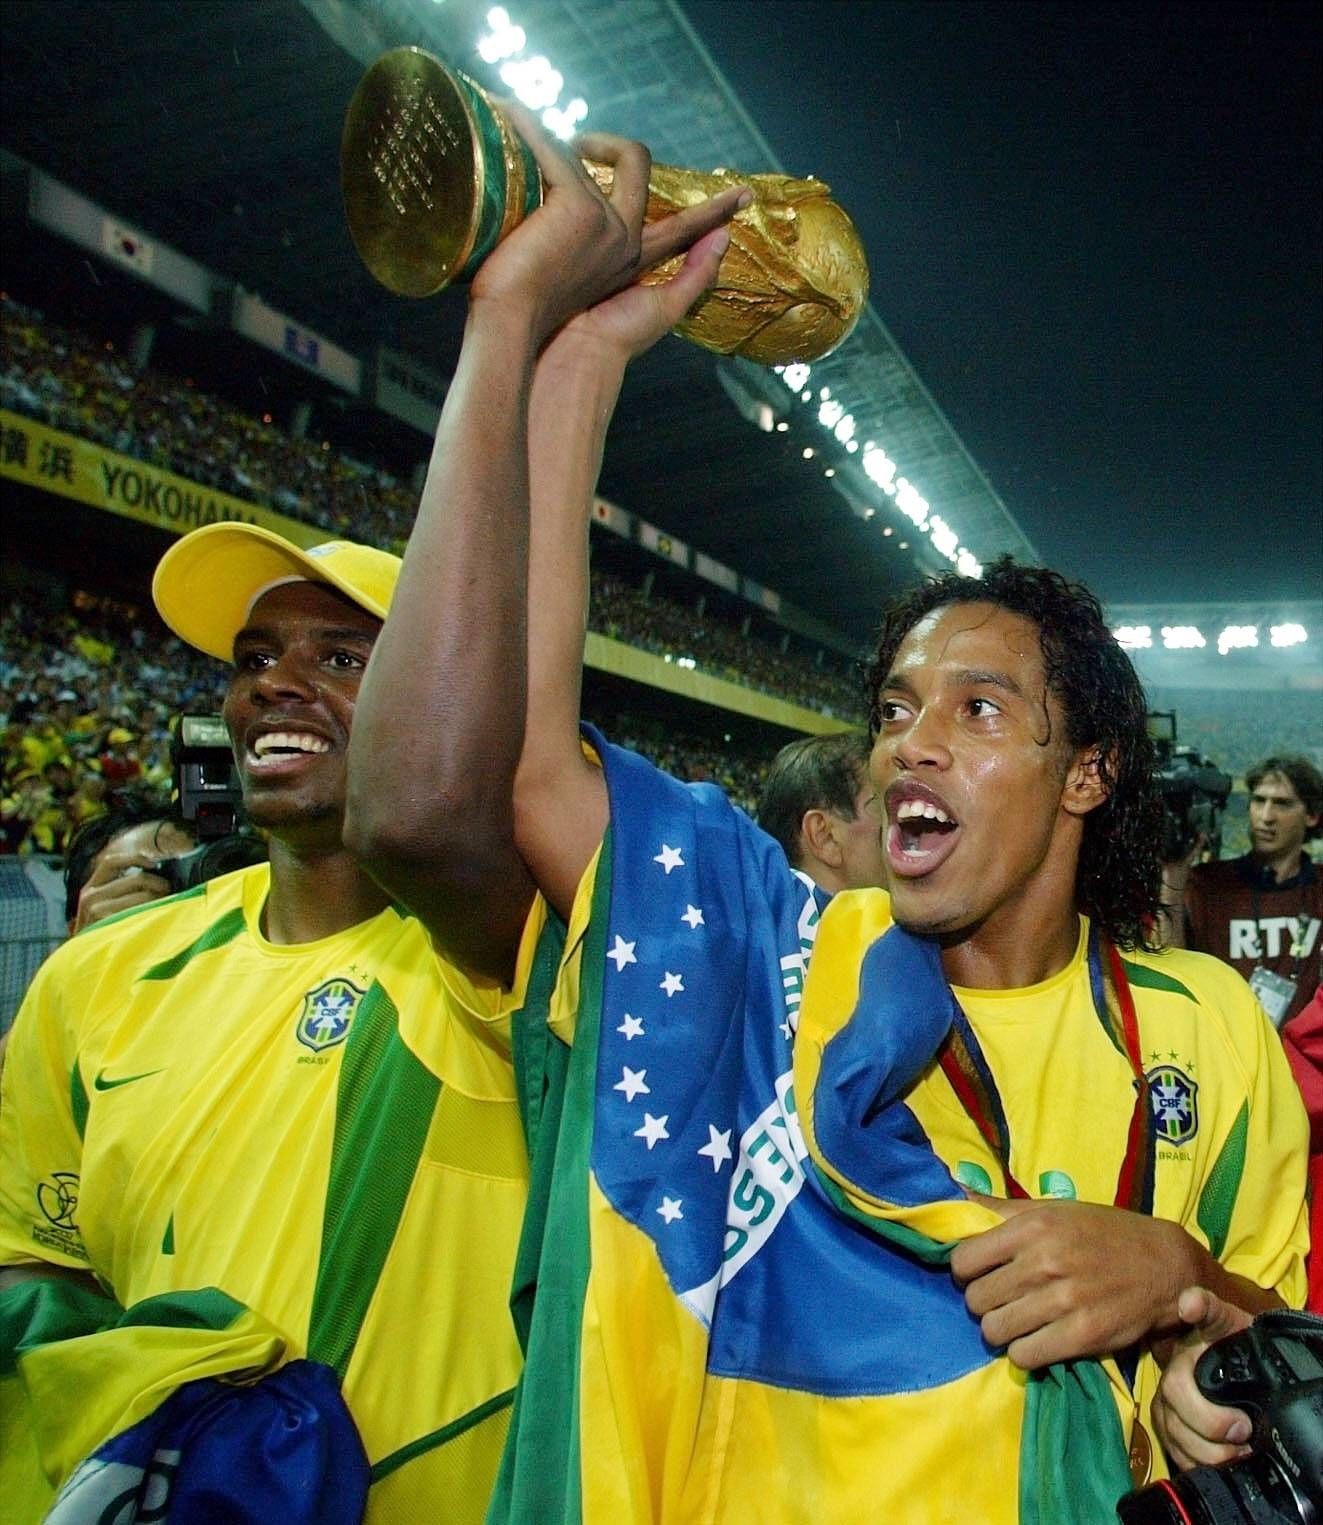 Bývalý nejlepší fotbalista světa Ronaldinho definitně ukončil kariéru